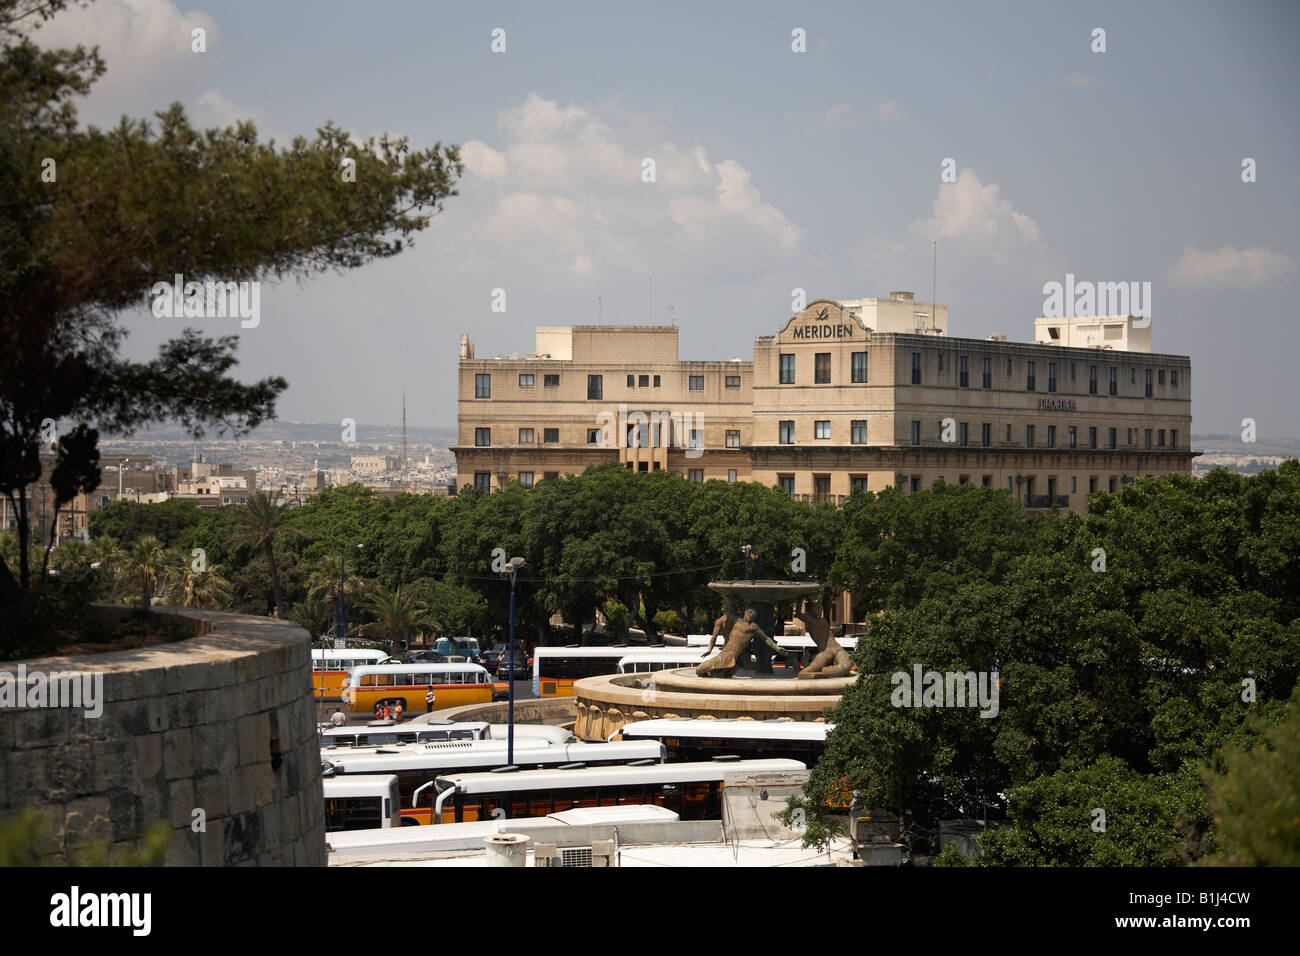 Le Meridien Hotel sopra la stazione di autobus a La Valletta o La Valletta Malta Foto Stock